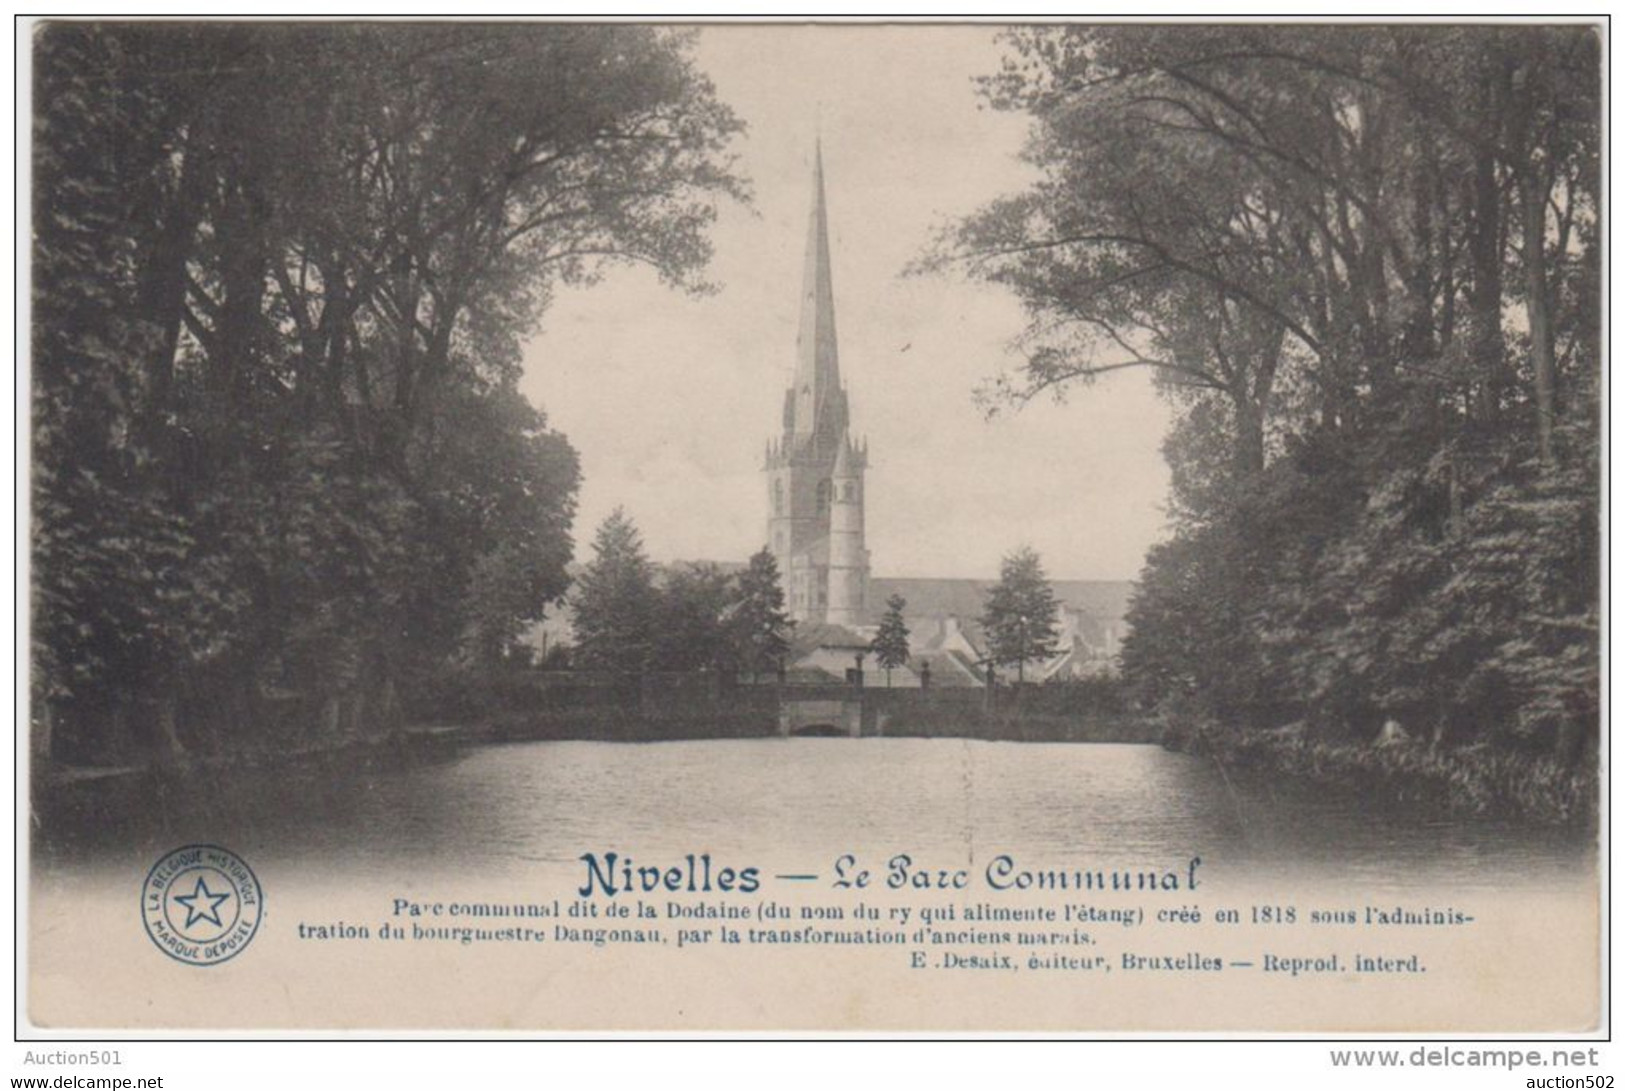 01984a Nivelles - Le Parc Communal (La Dodaine) - Nijvel